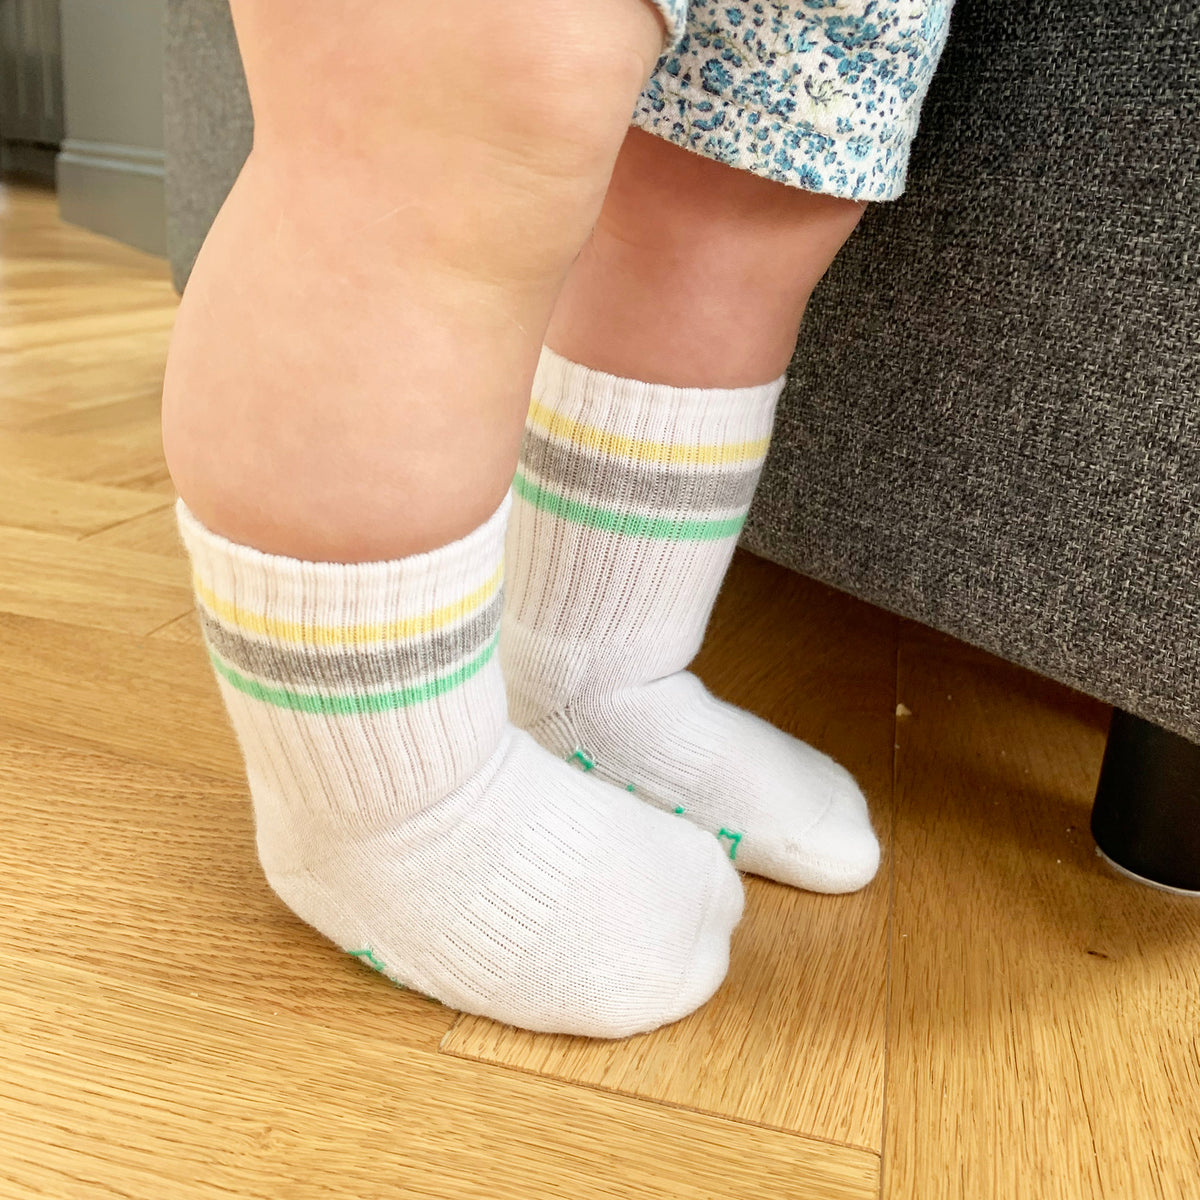 Non-Slip Stay-on Baby & Toddler Organic Quarter Crew Sporty Socks - 3 Pack - Pinks